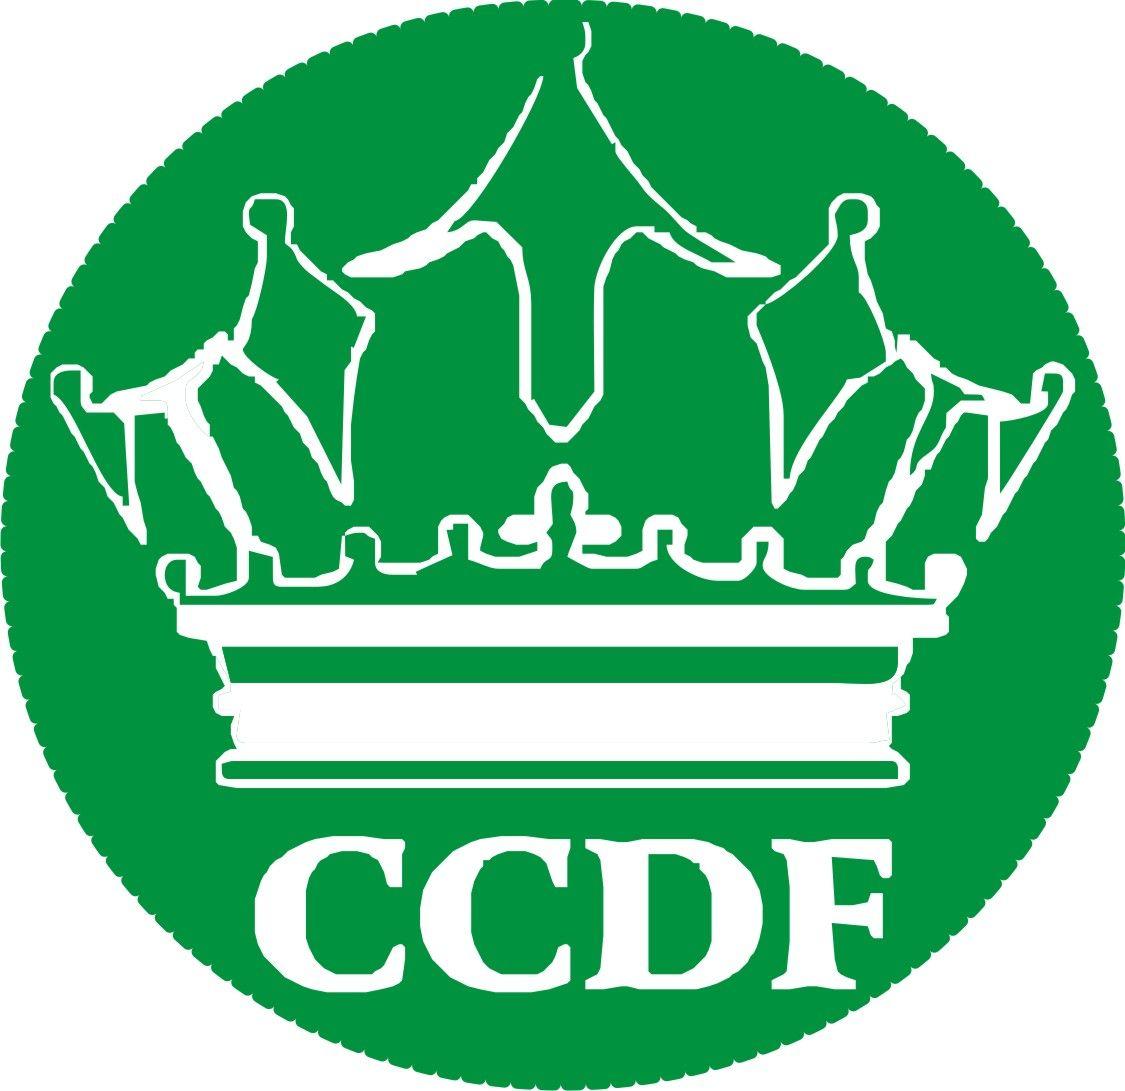 CCDF Logo - CCDF LOGO